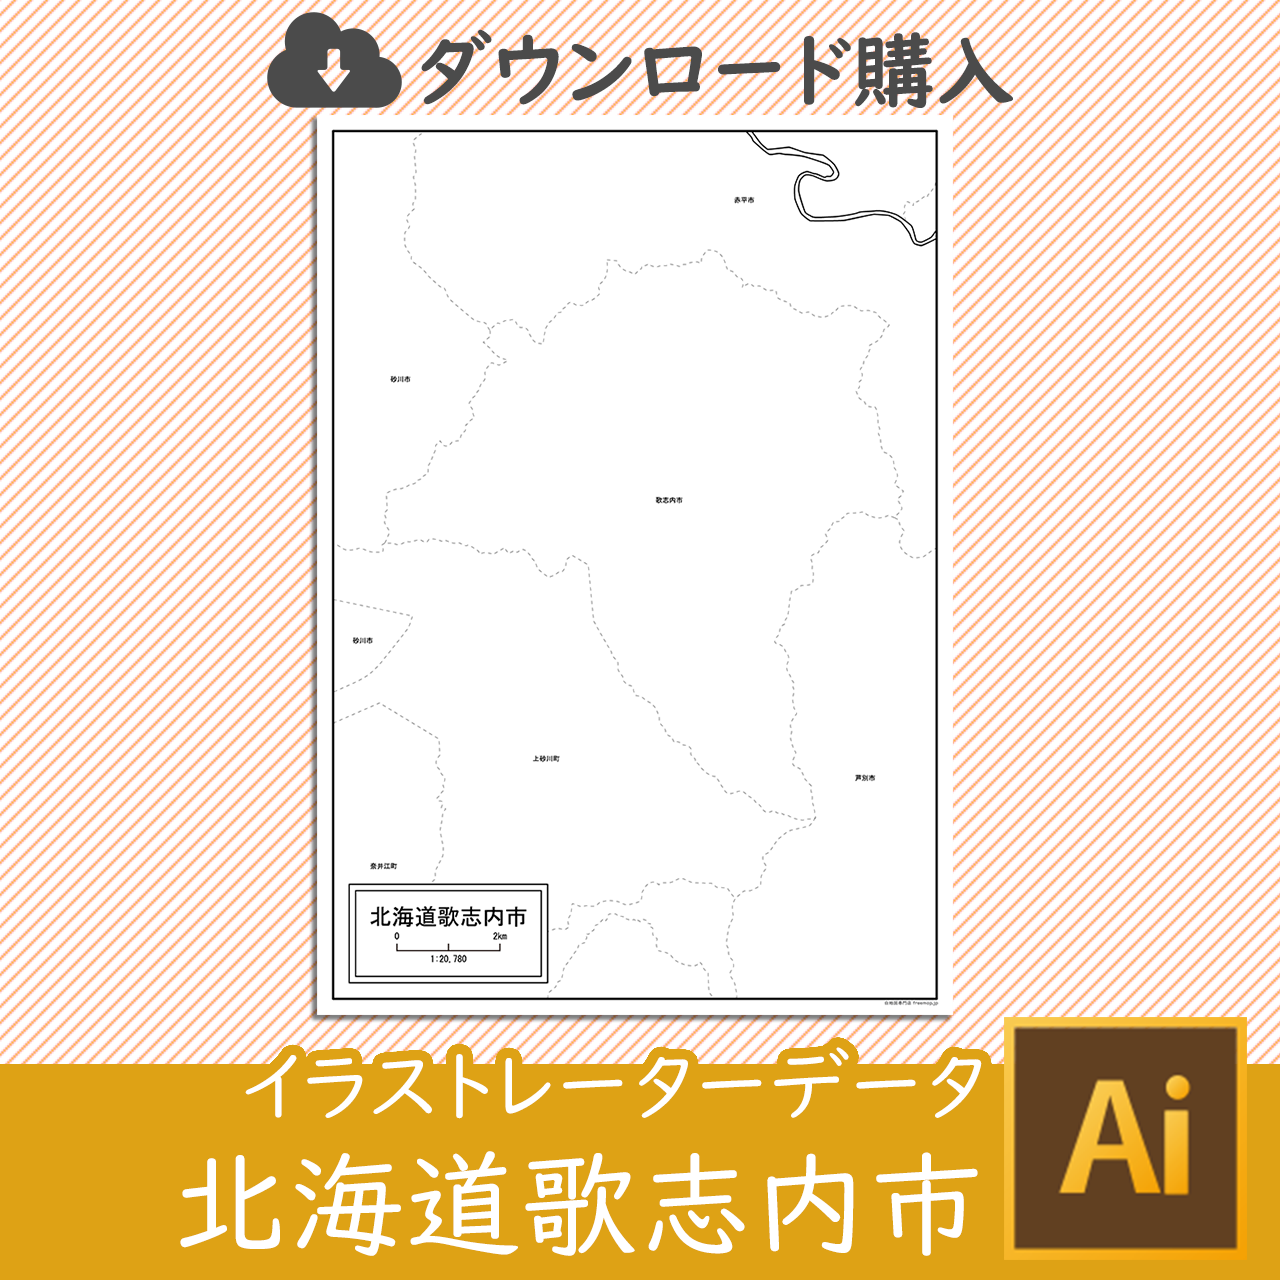 歌志内市のaiデータのサムネイル画像